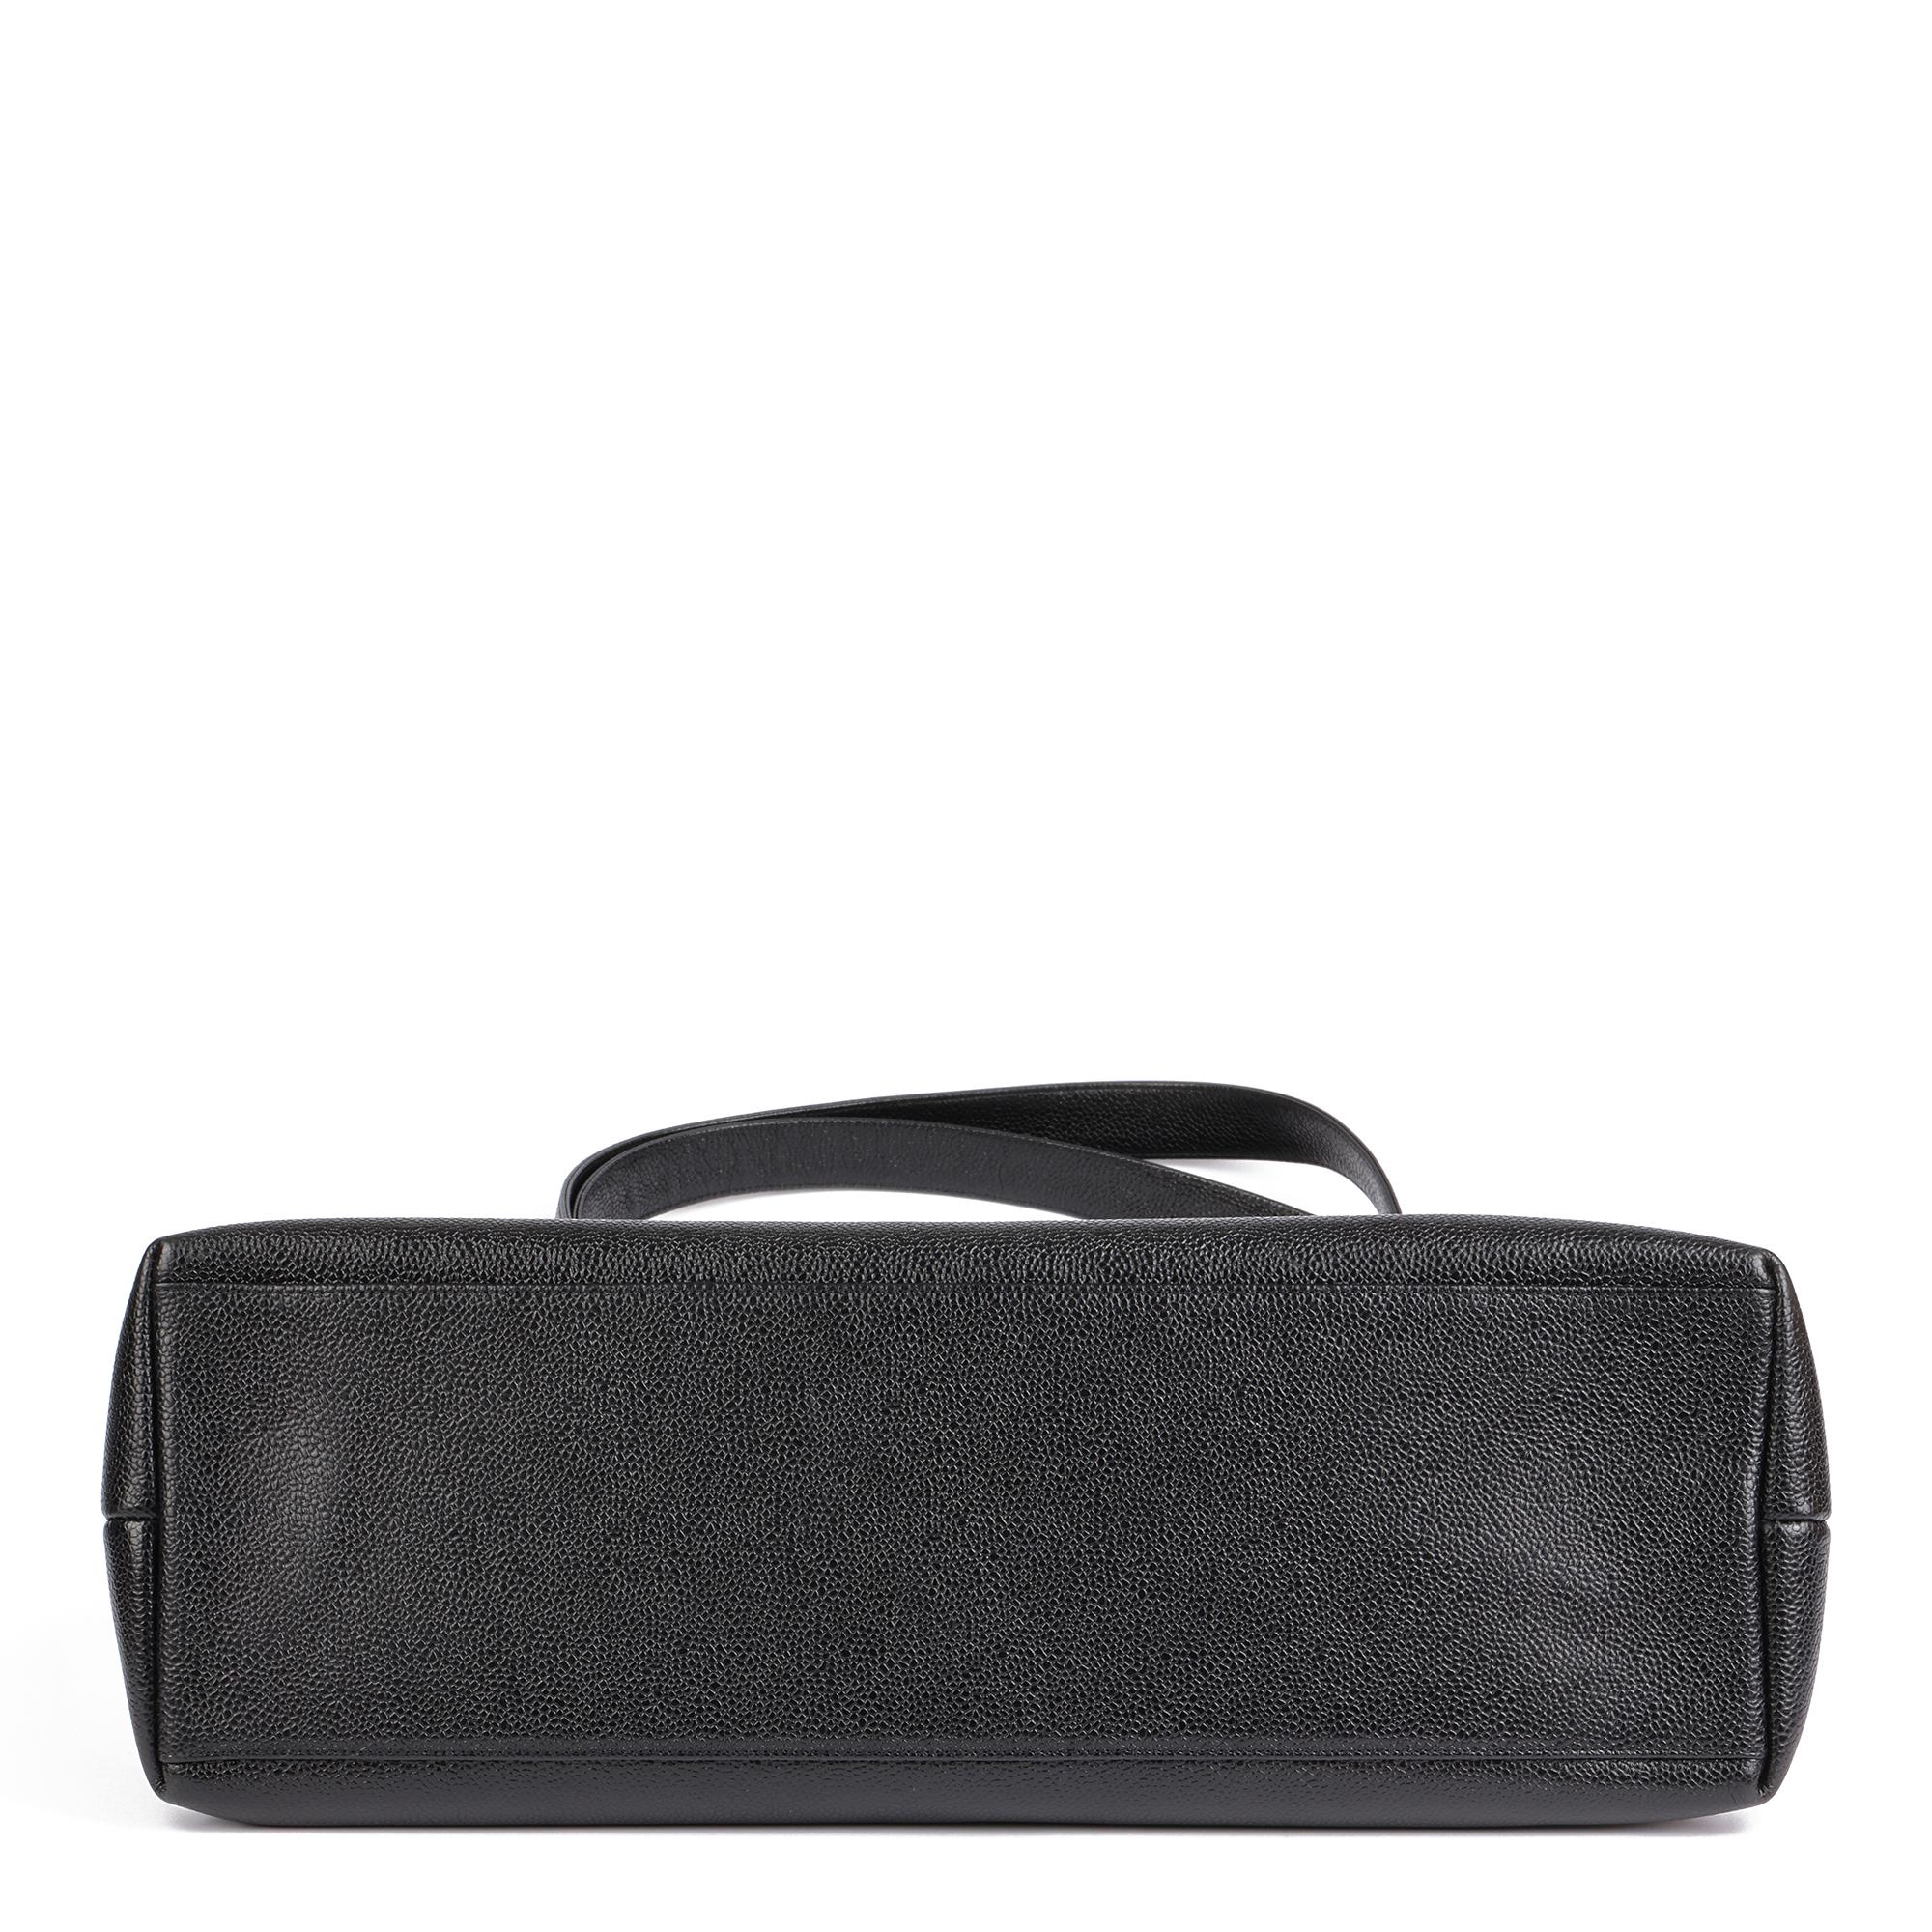 CHANEL Black Caviar Leather Vintage Timeless Shoulder Bag For Sale 2